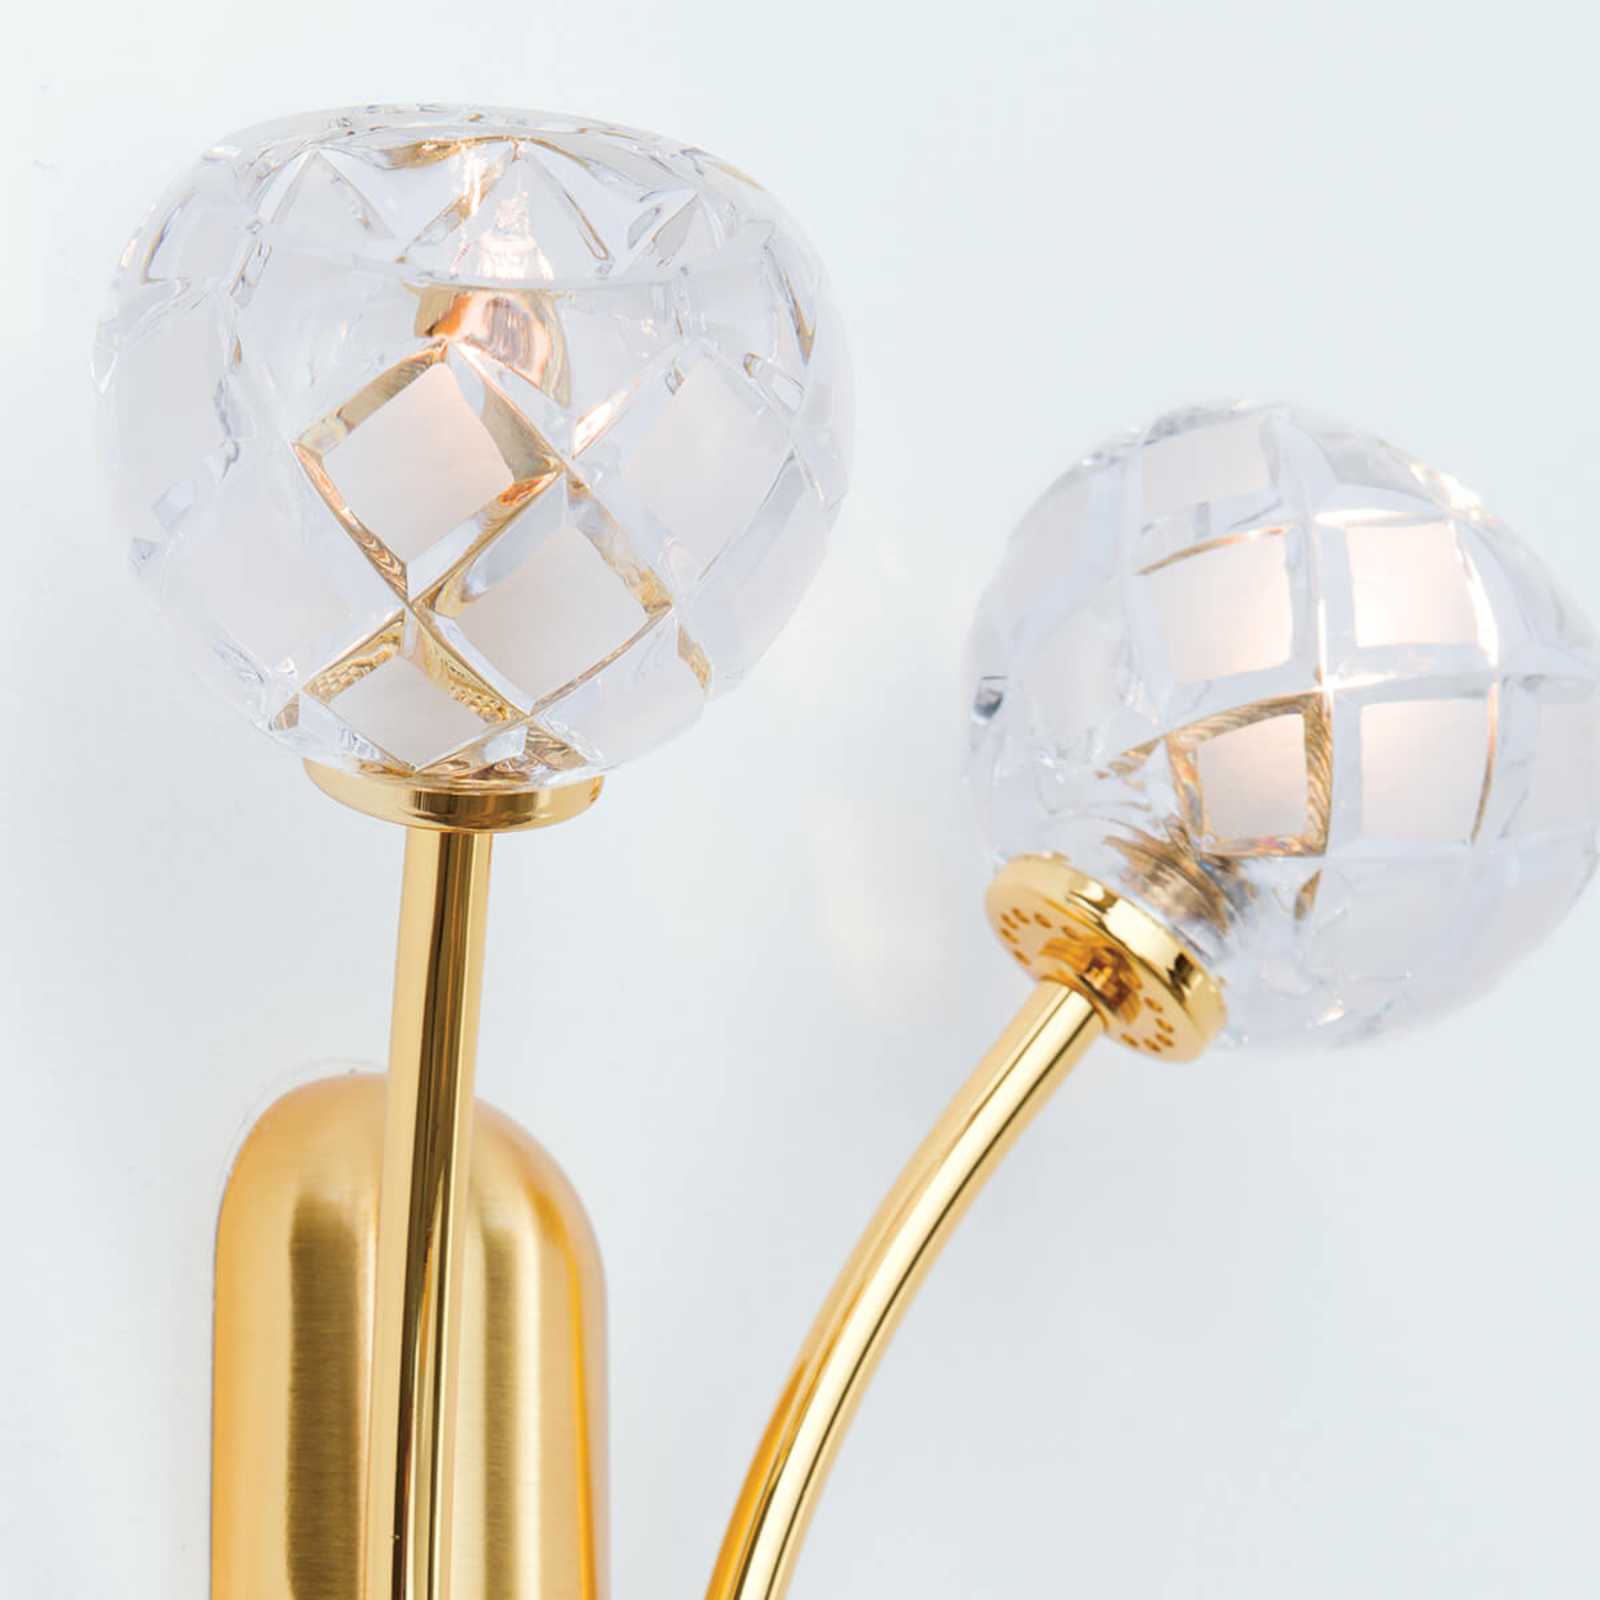 Loodkristal-wandlamp Maderno, goud, 2-lamps